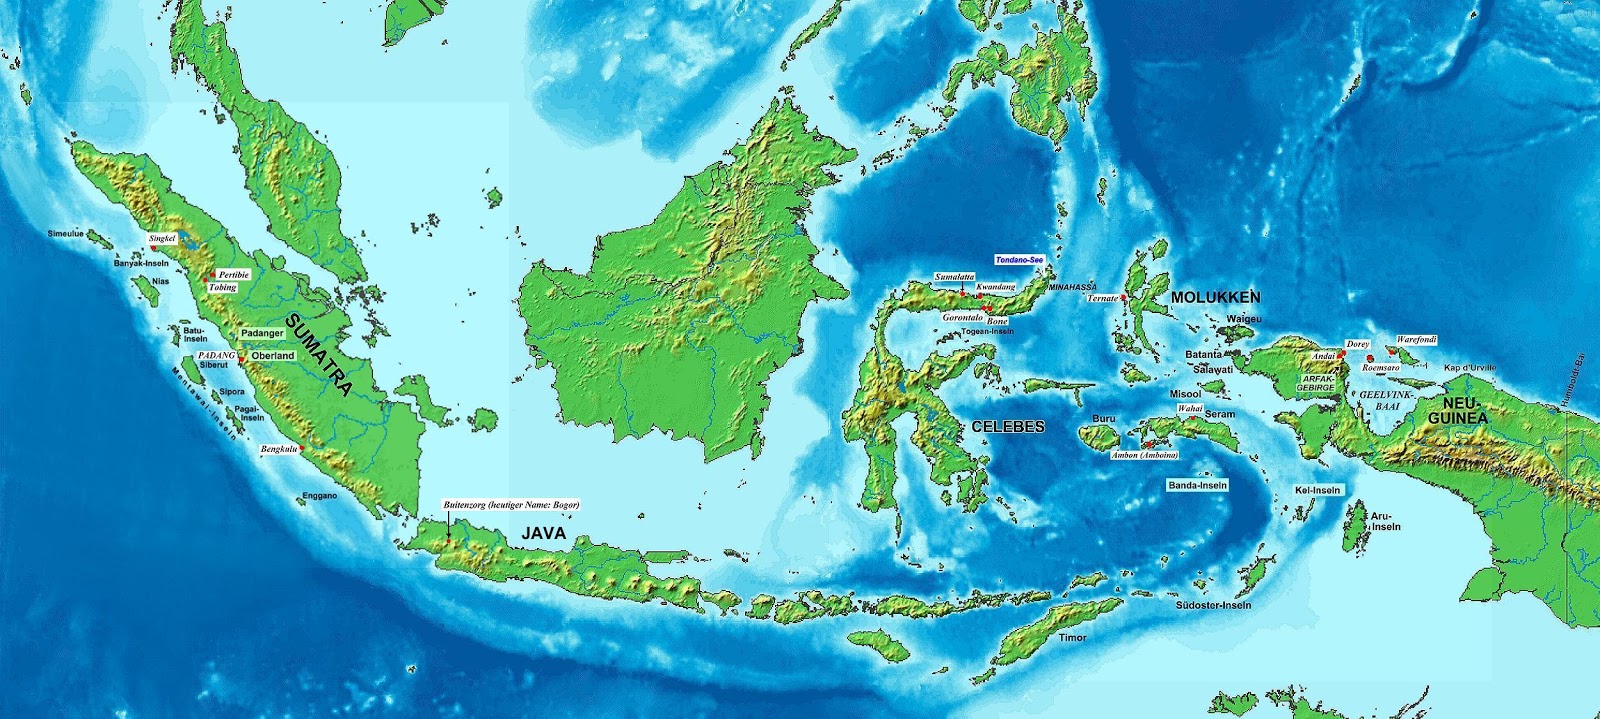  Gambar  Peta Indonesia Lengkap  Gambar  Foto